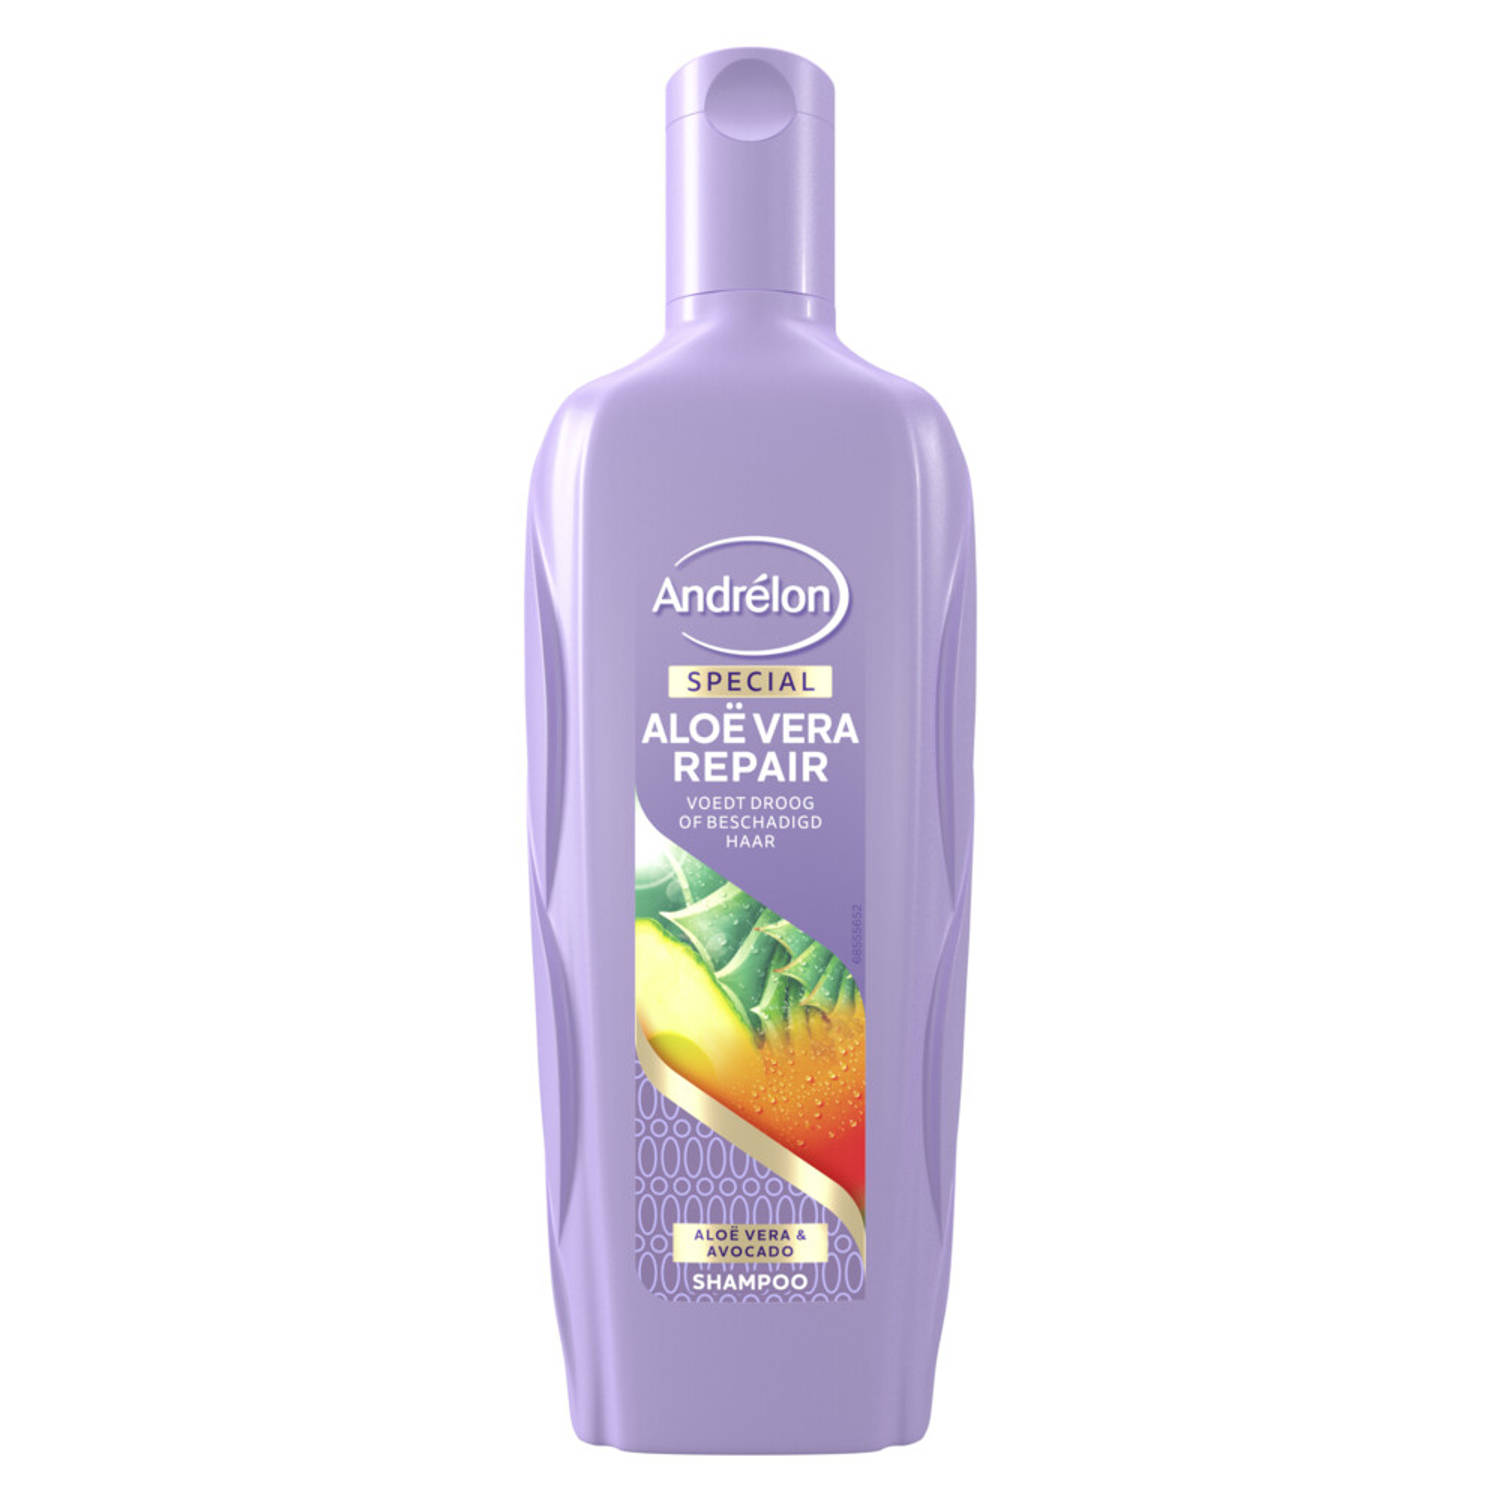 Andrelon Shampoo Aloe Vera Repair 300 ml